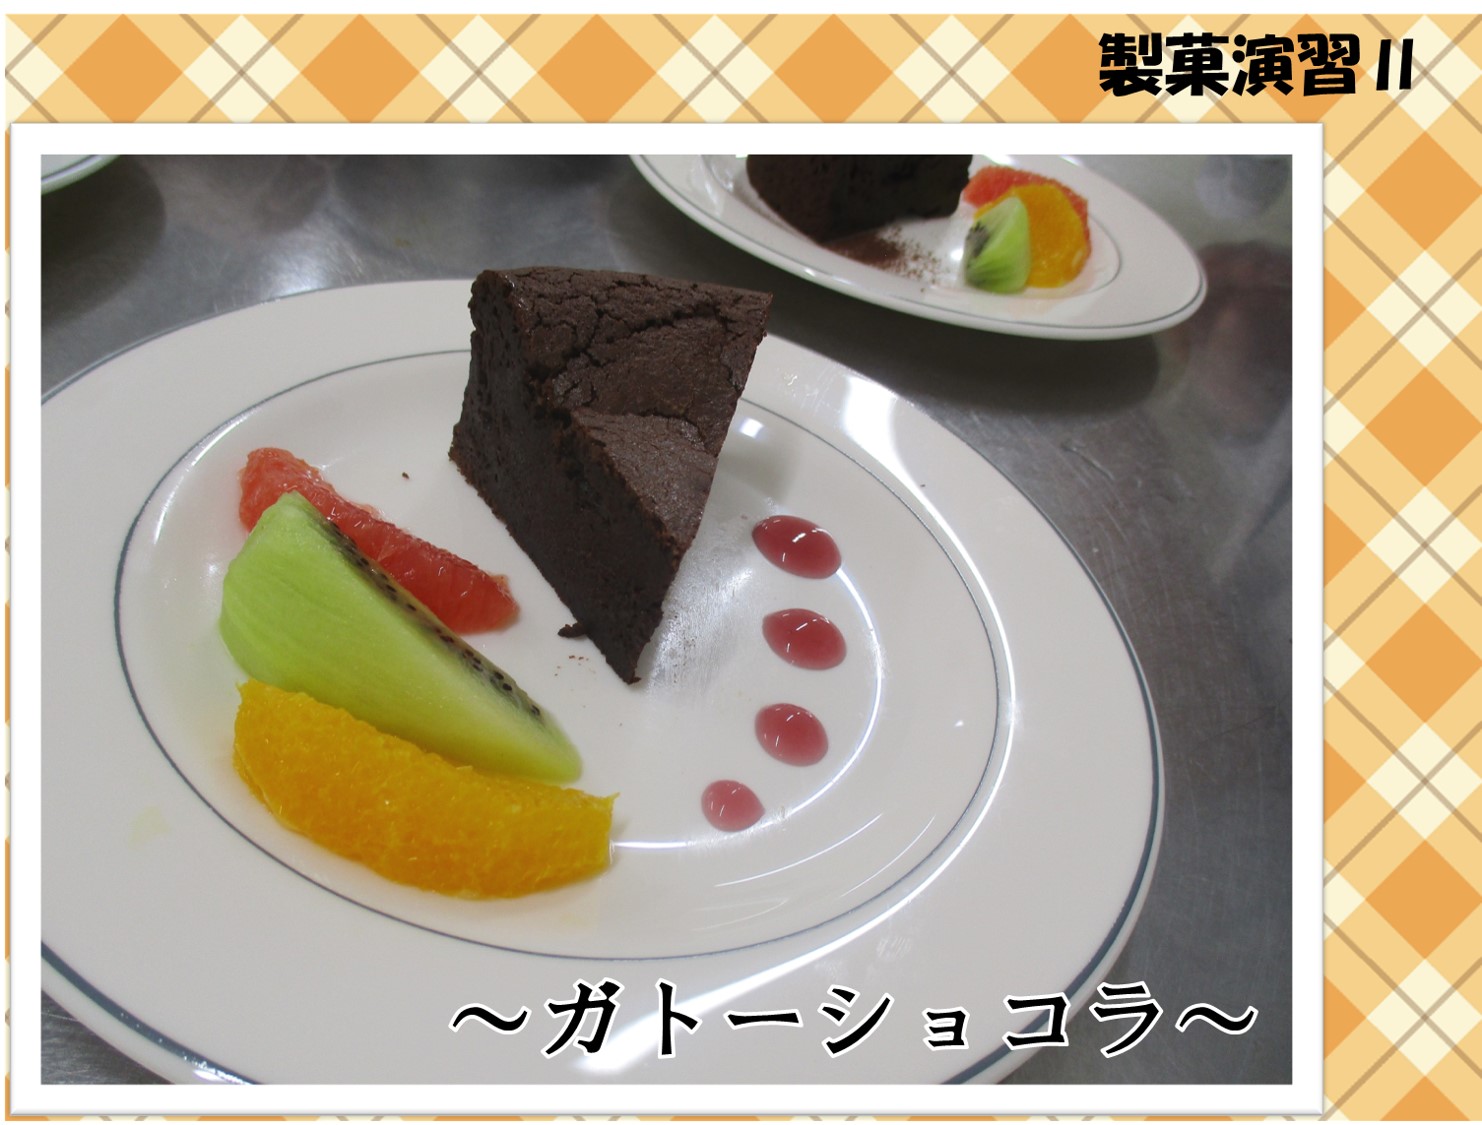 【食物栄養学科】製菓演習Ⅱでガトーショコラを作りました。